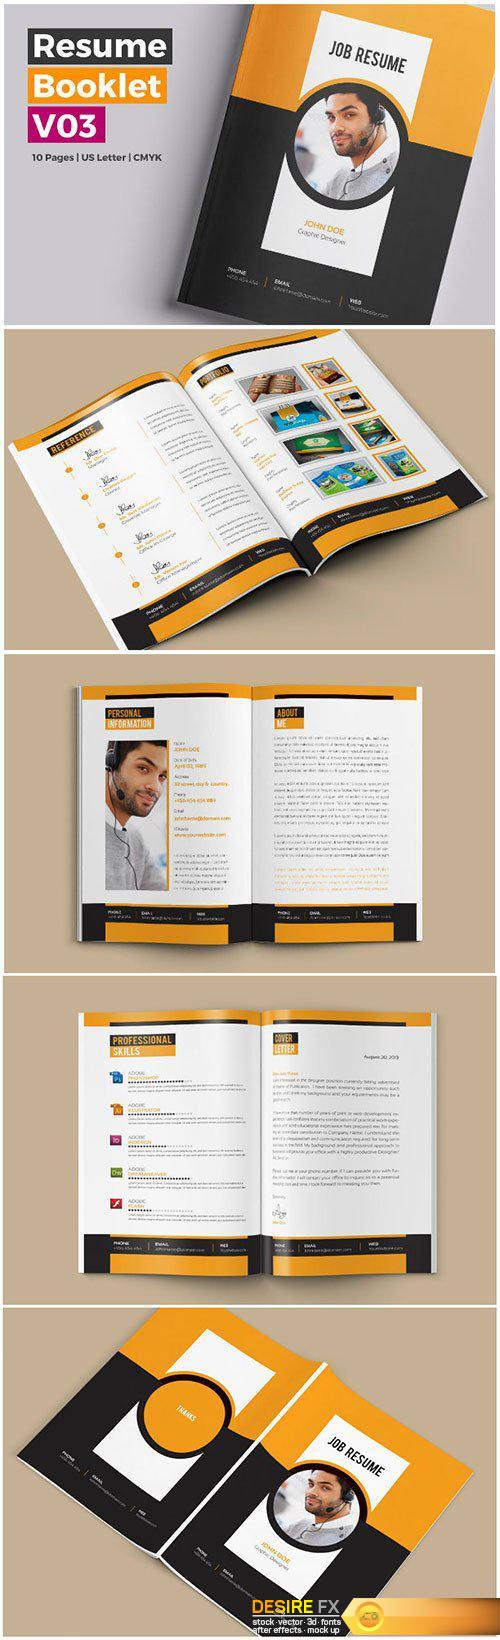 10 Pages Professional Resume / CV Booklet V03